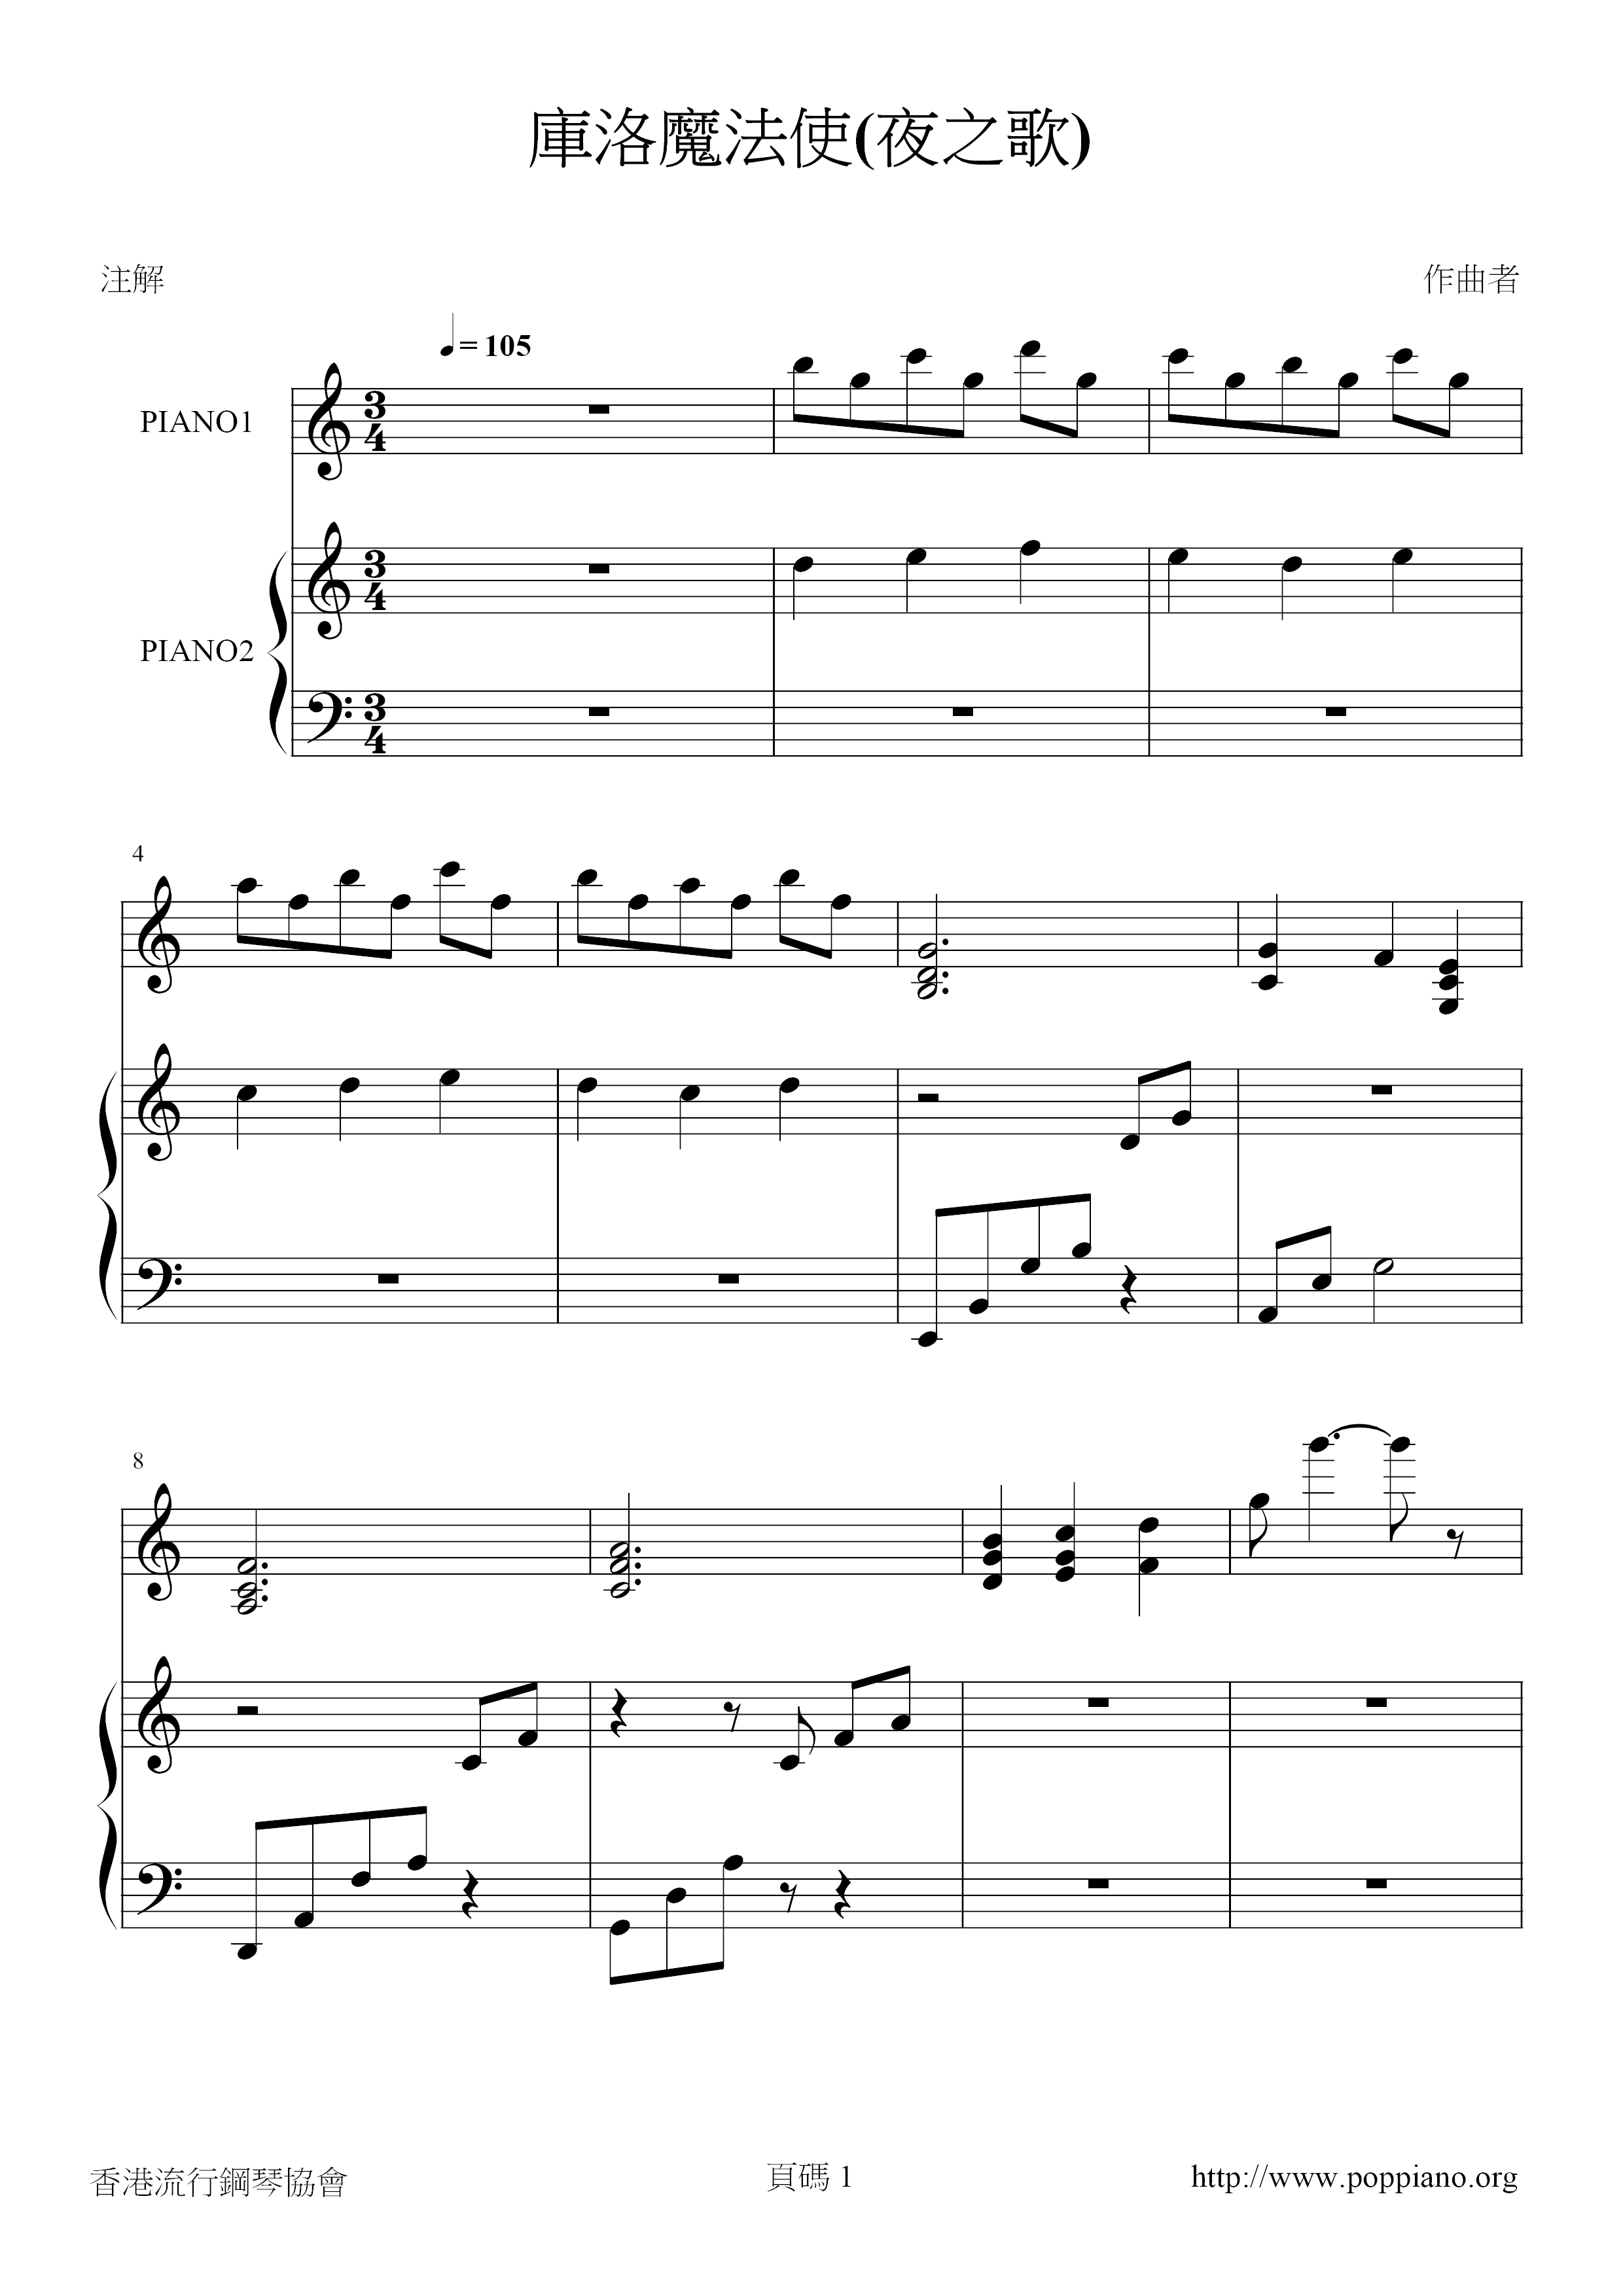 Kuro Magica (Night Song) Score